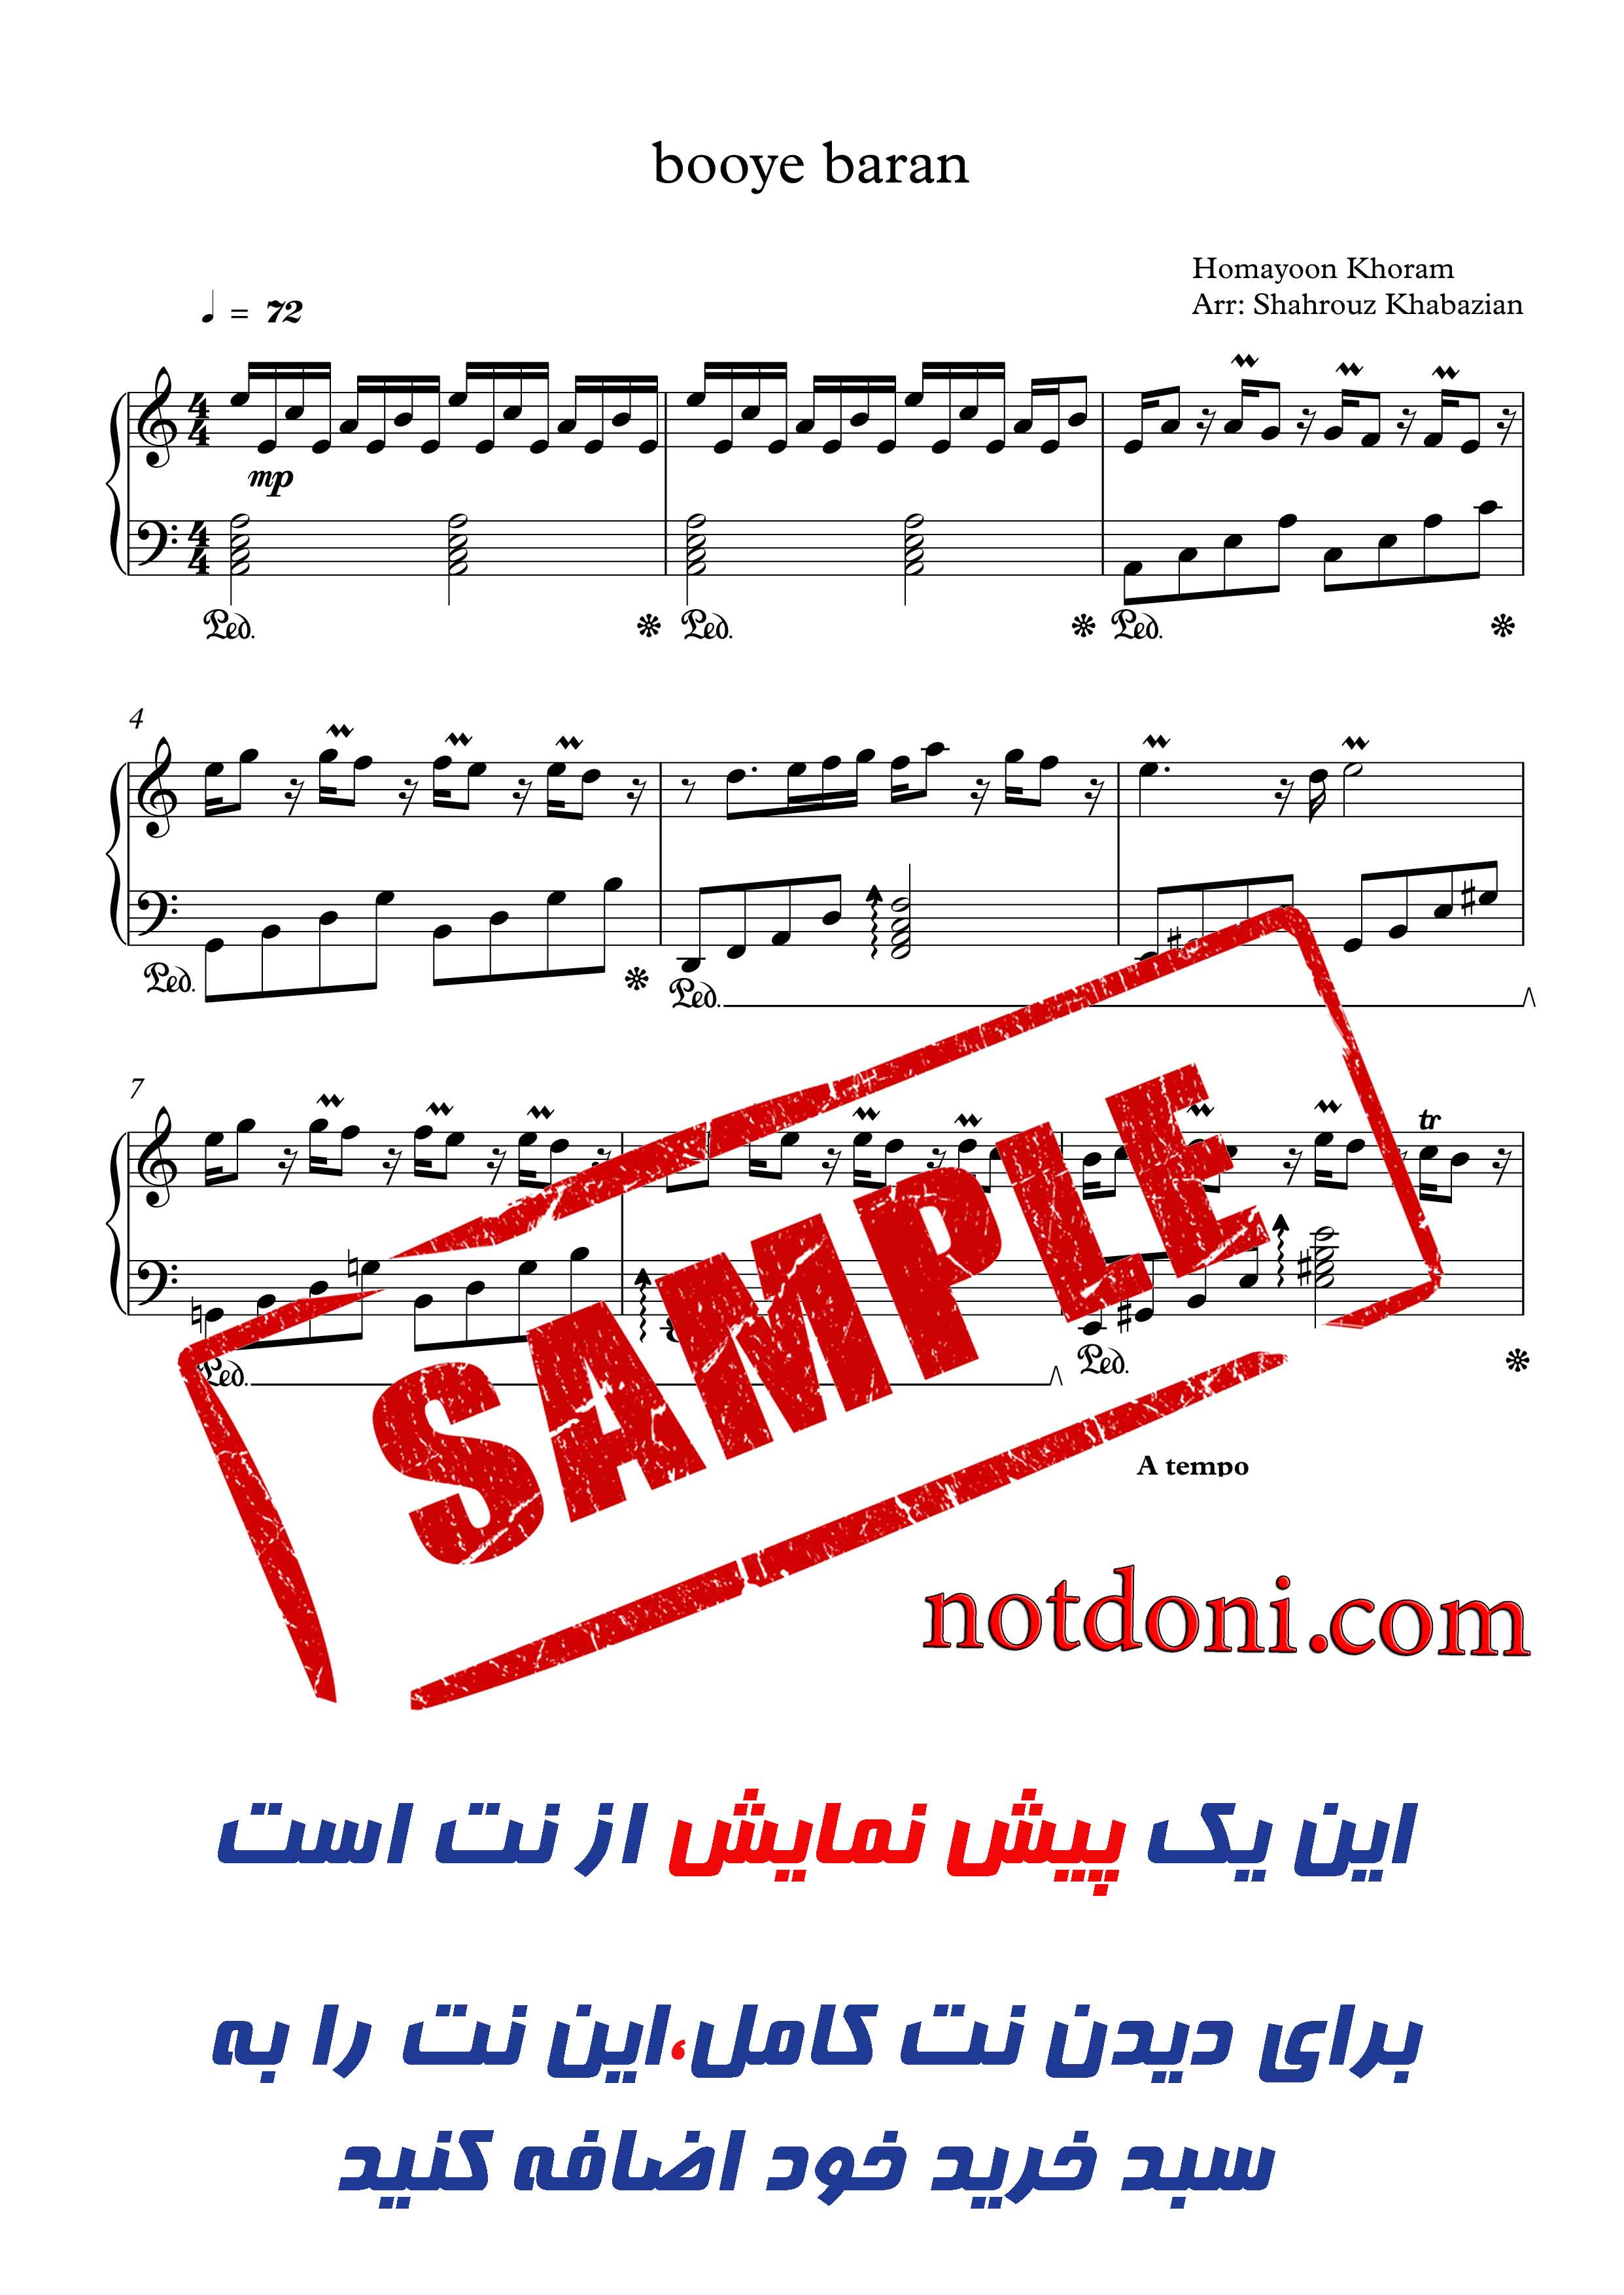 نت پیانوی بوی باران محمد اصفهانی